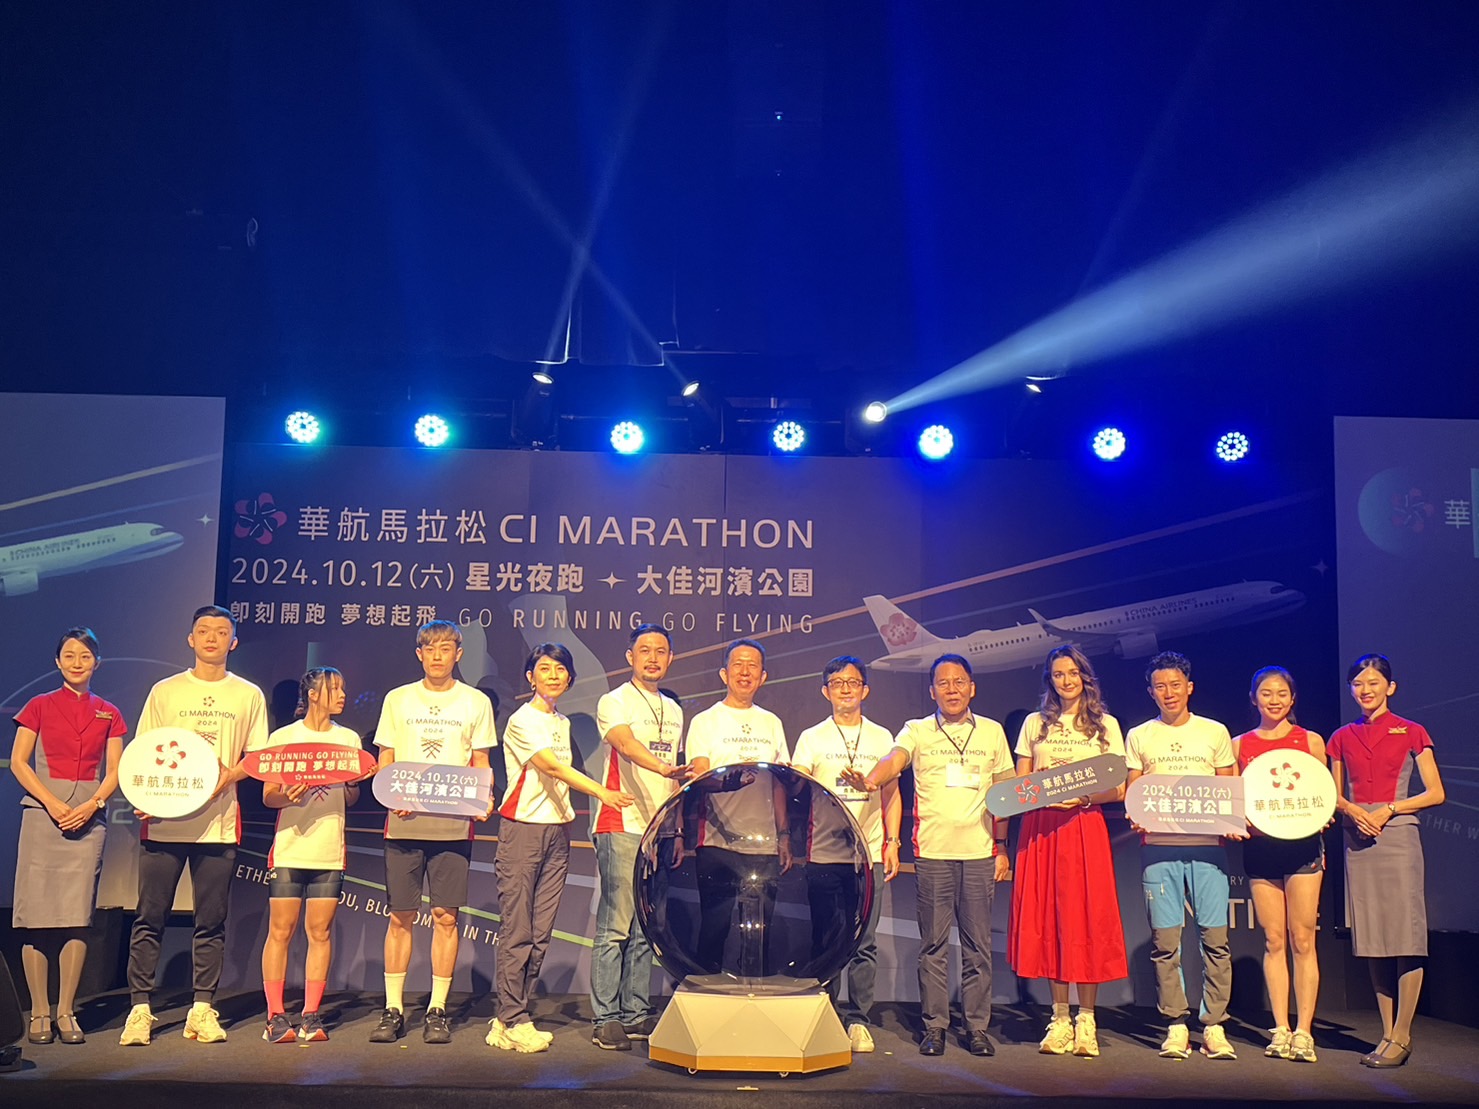 中华航空即将于10月12日在台北大佳河滨公园举办首届星光夜跑「华航马拉松」。记者甘芝萁╱摄影